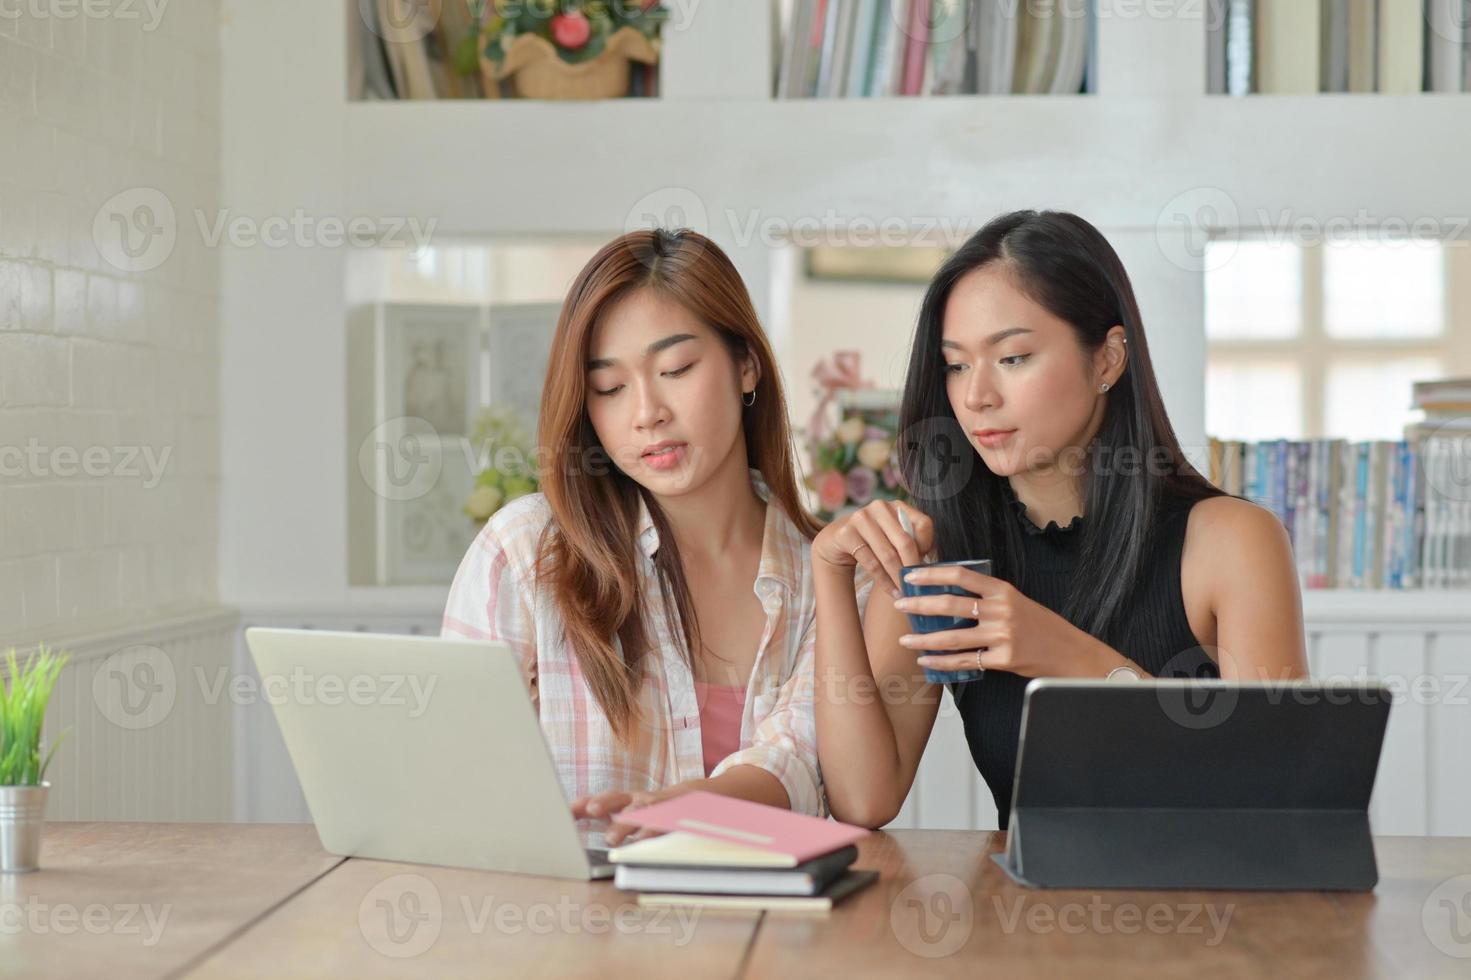 två unga kvinnliga studenter med kaffe använder en bärbar dator för att studera online hemma under sommarsemestern. foto